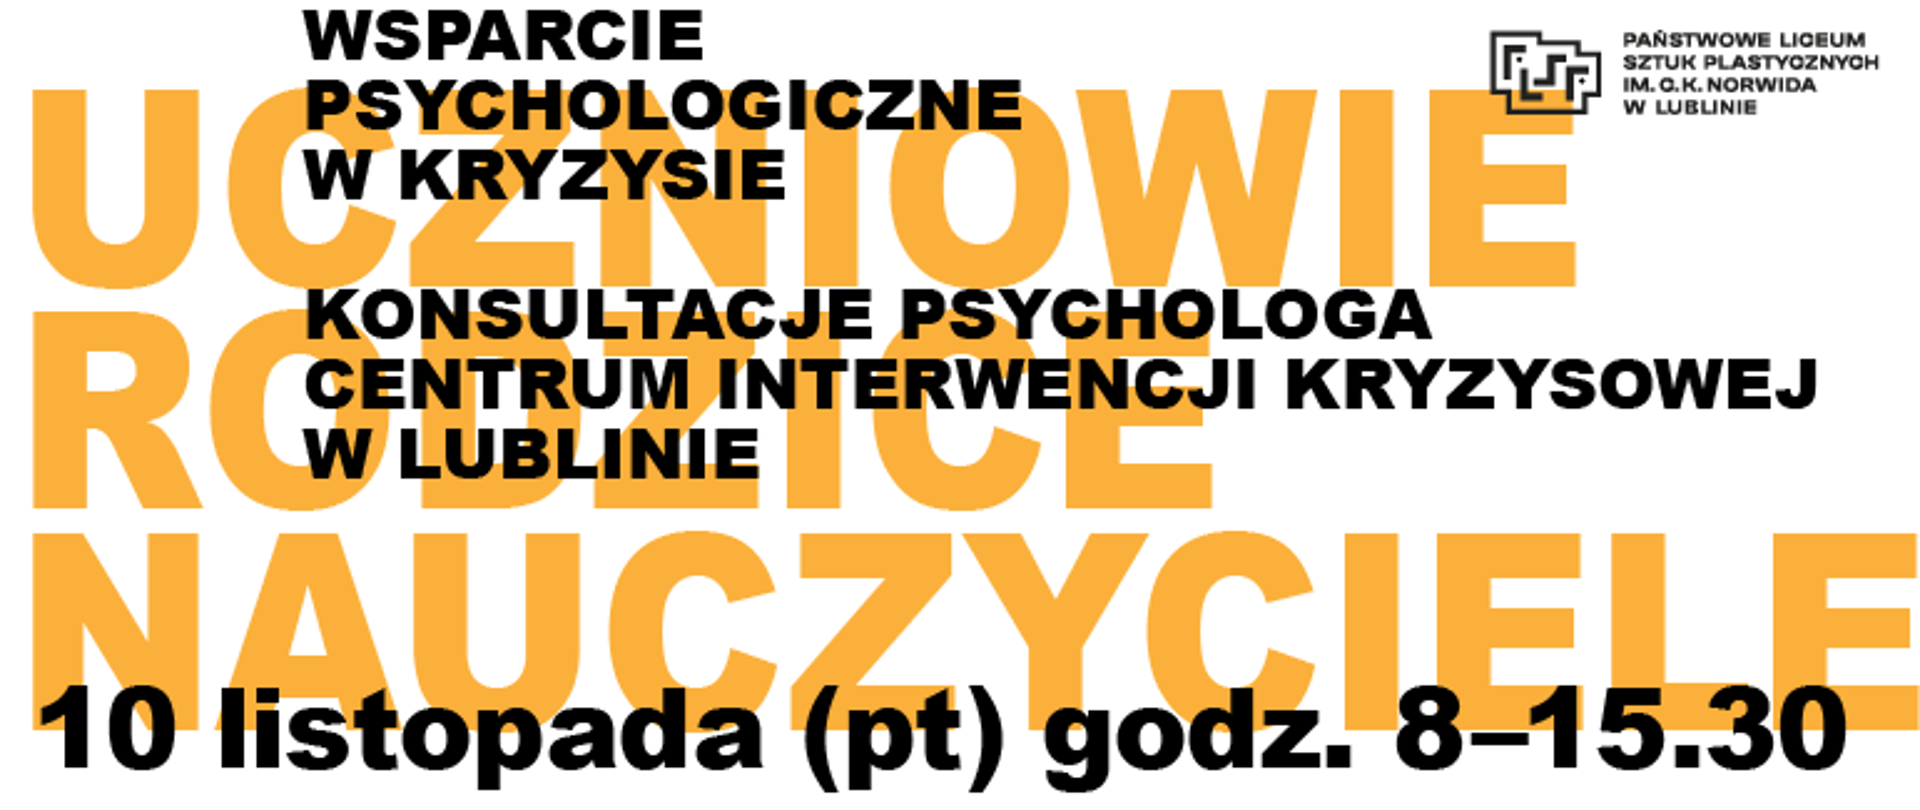 Wsparcie psychologiczne w kryzysie – konsultacje psychologa z Centrum Interwencji Kryzysowej w Lublinie – dla uczniów, rodziców i nauczycieli